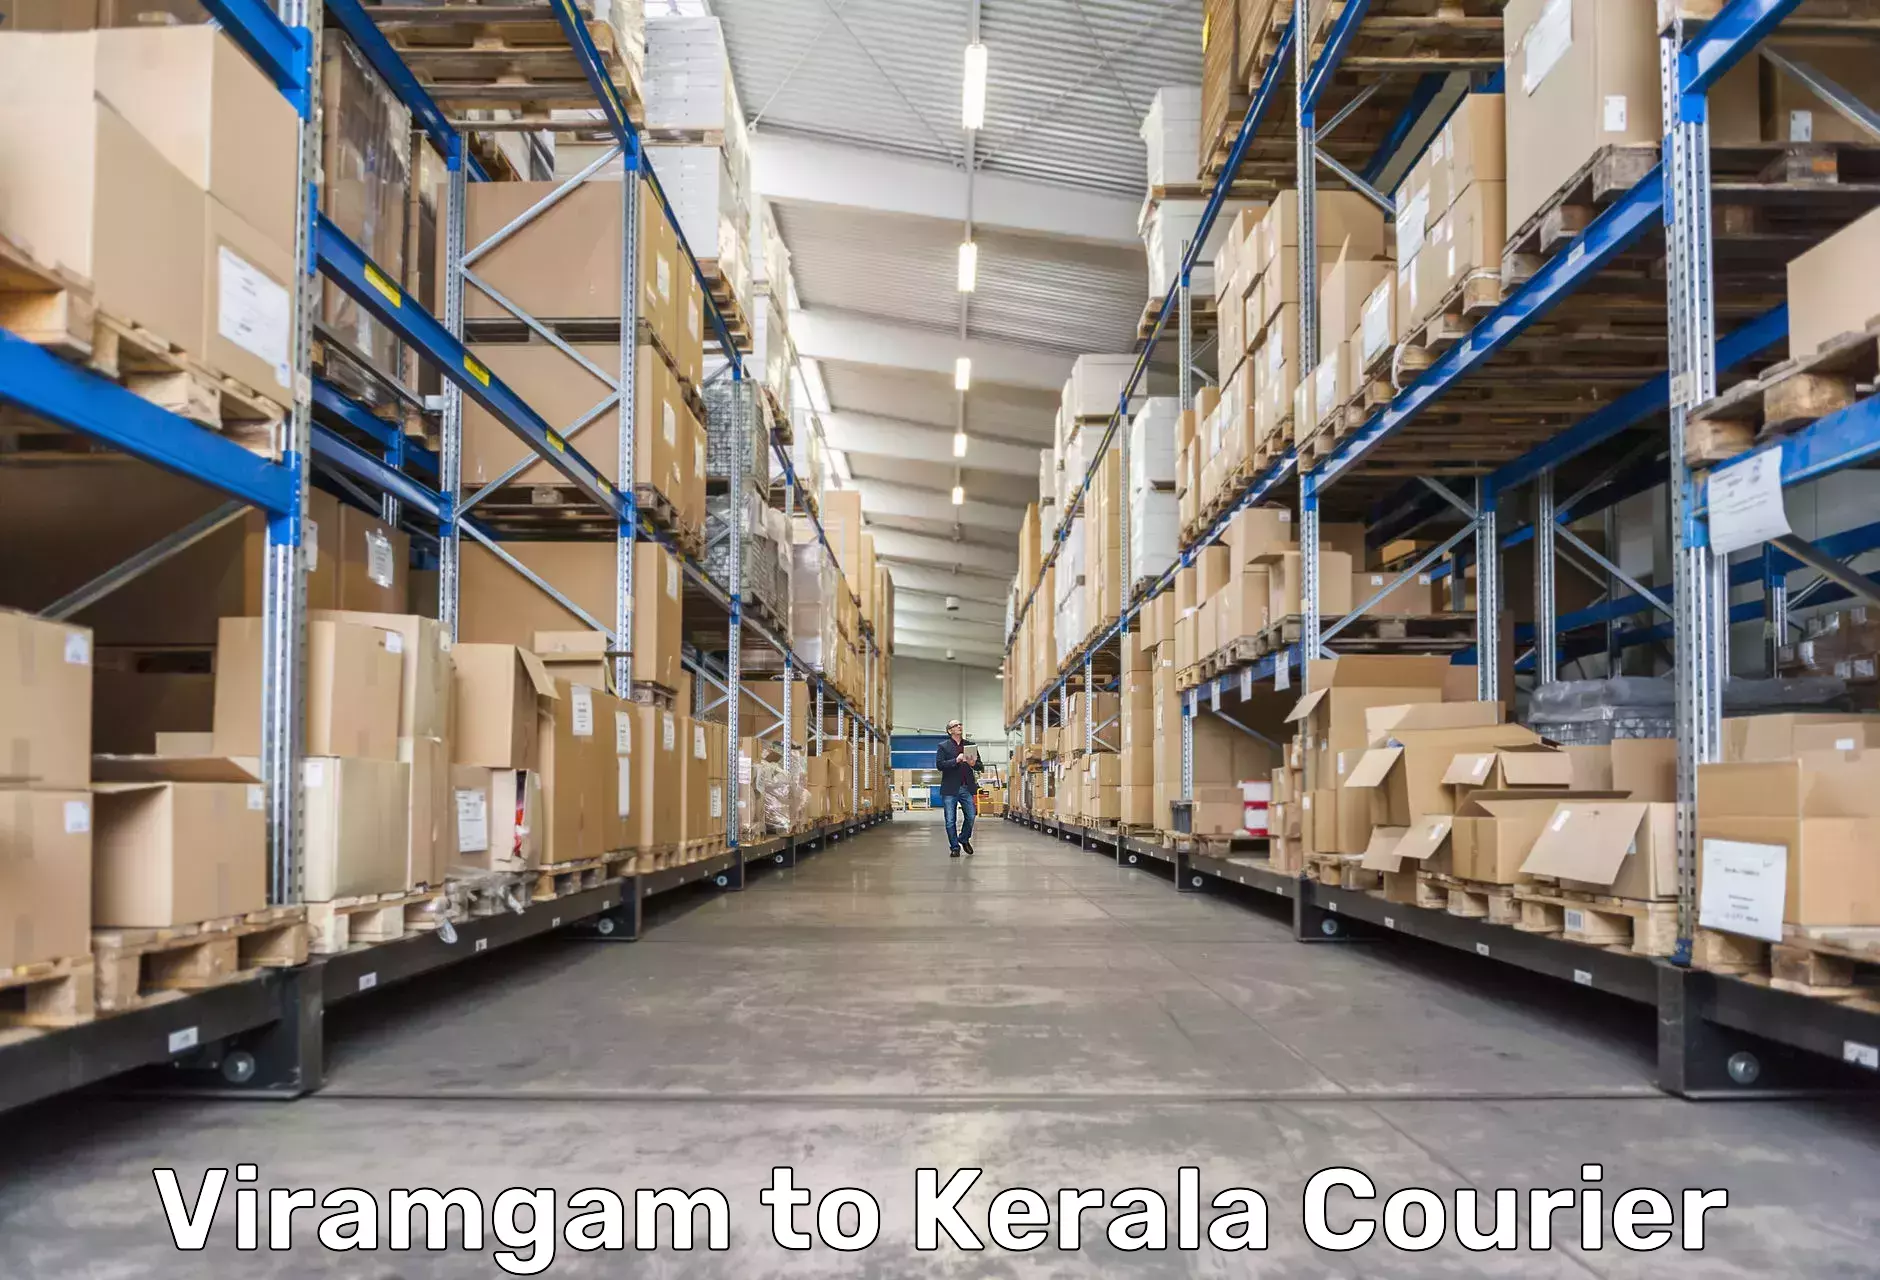 Courier dispatch services in Viramgam to Kottarakkara